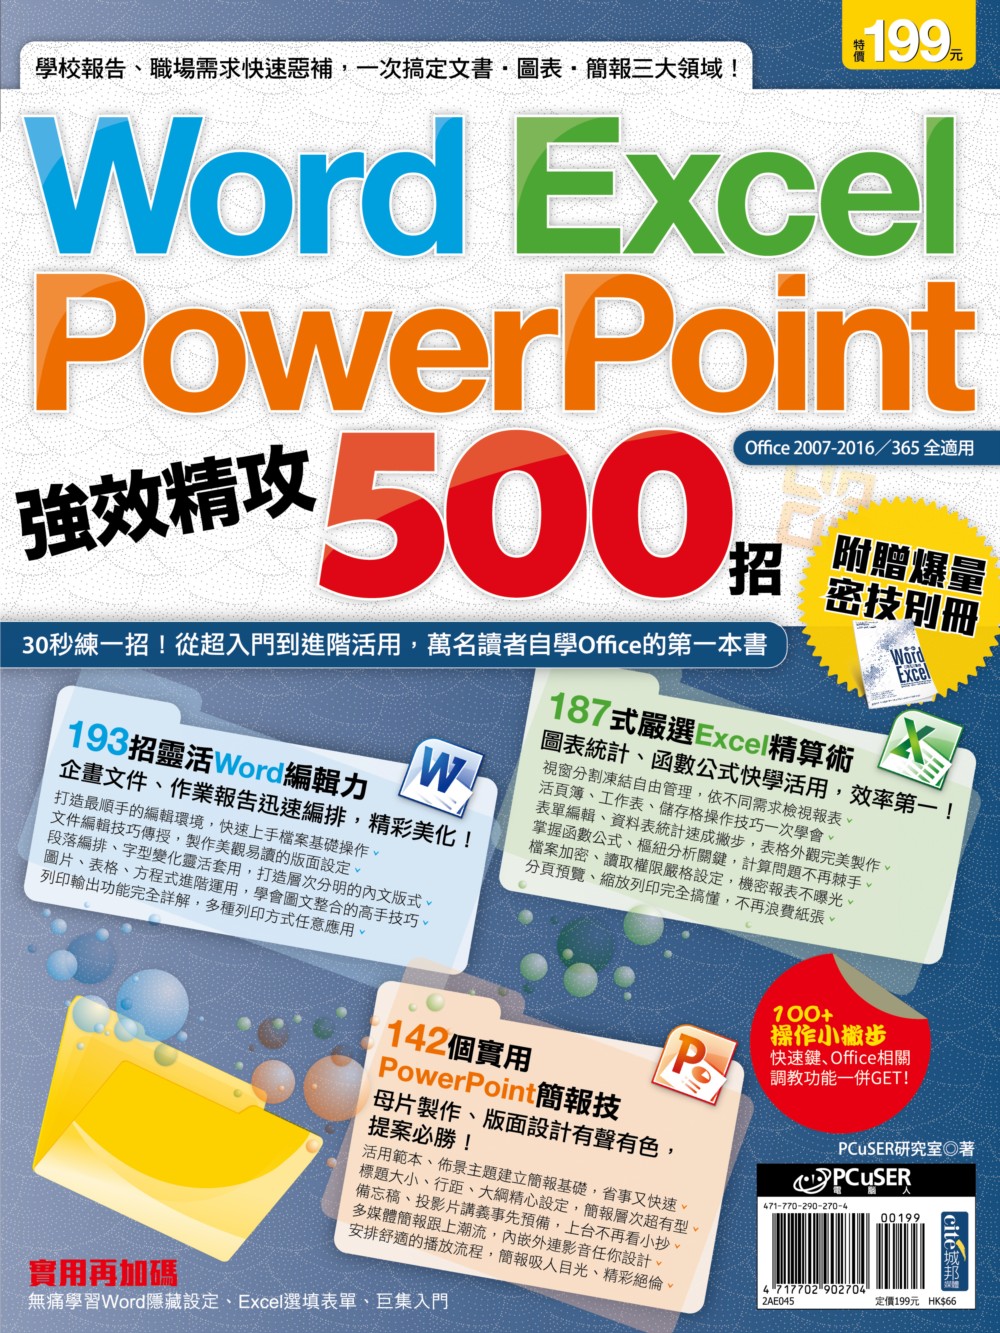 Word、Excel、PowerPoint 強效精攻500招...